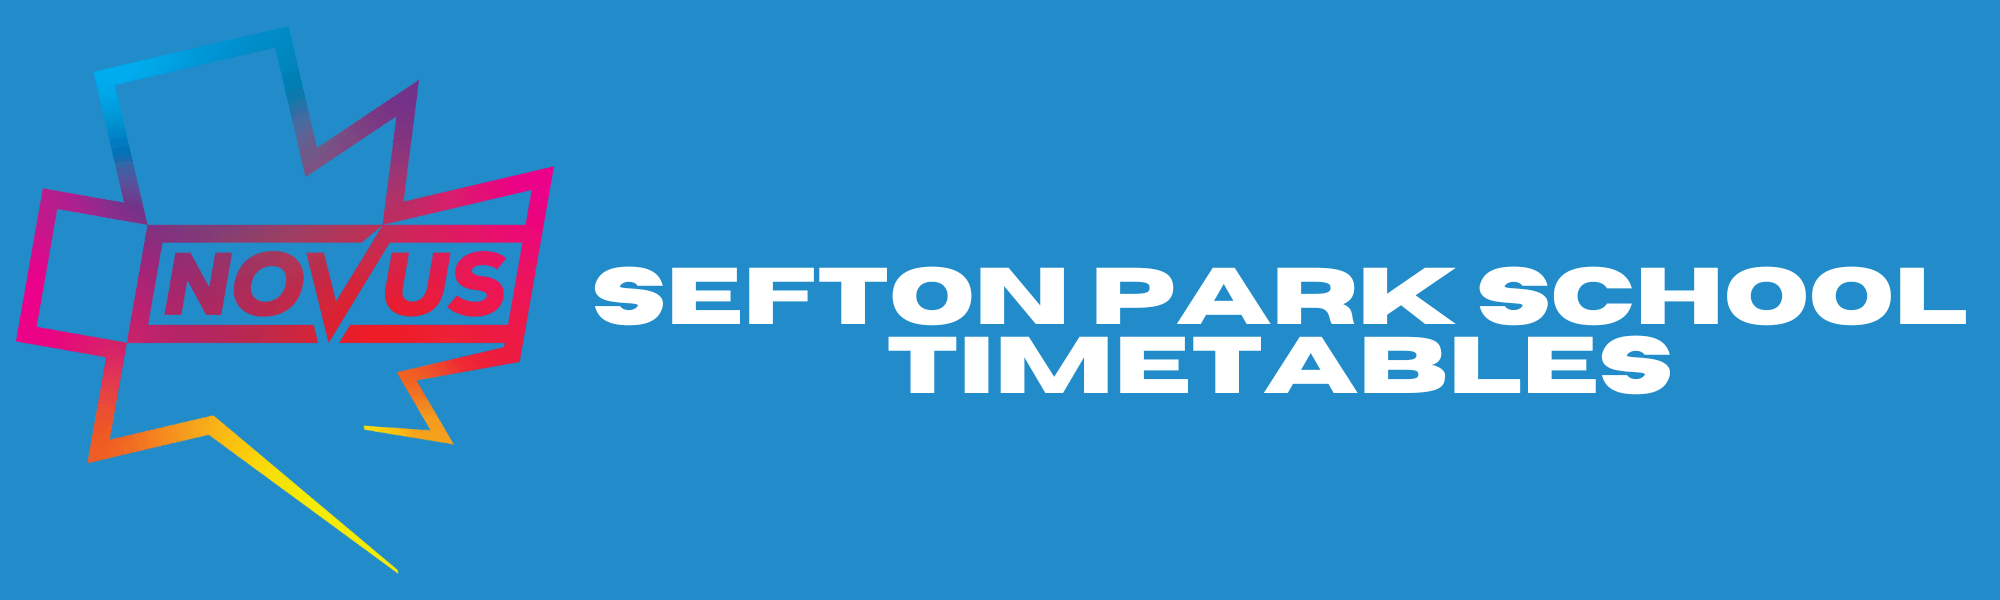 Sefton Park Timetables Banner